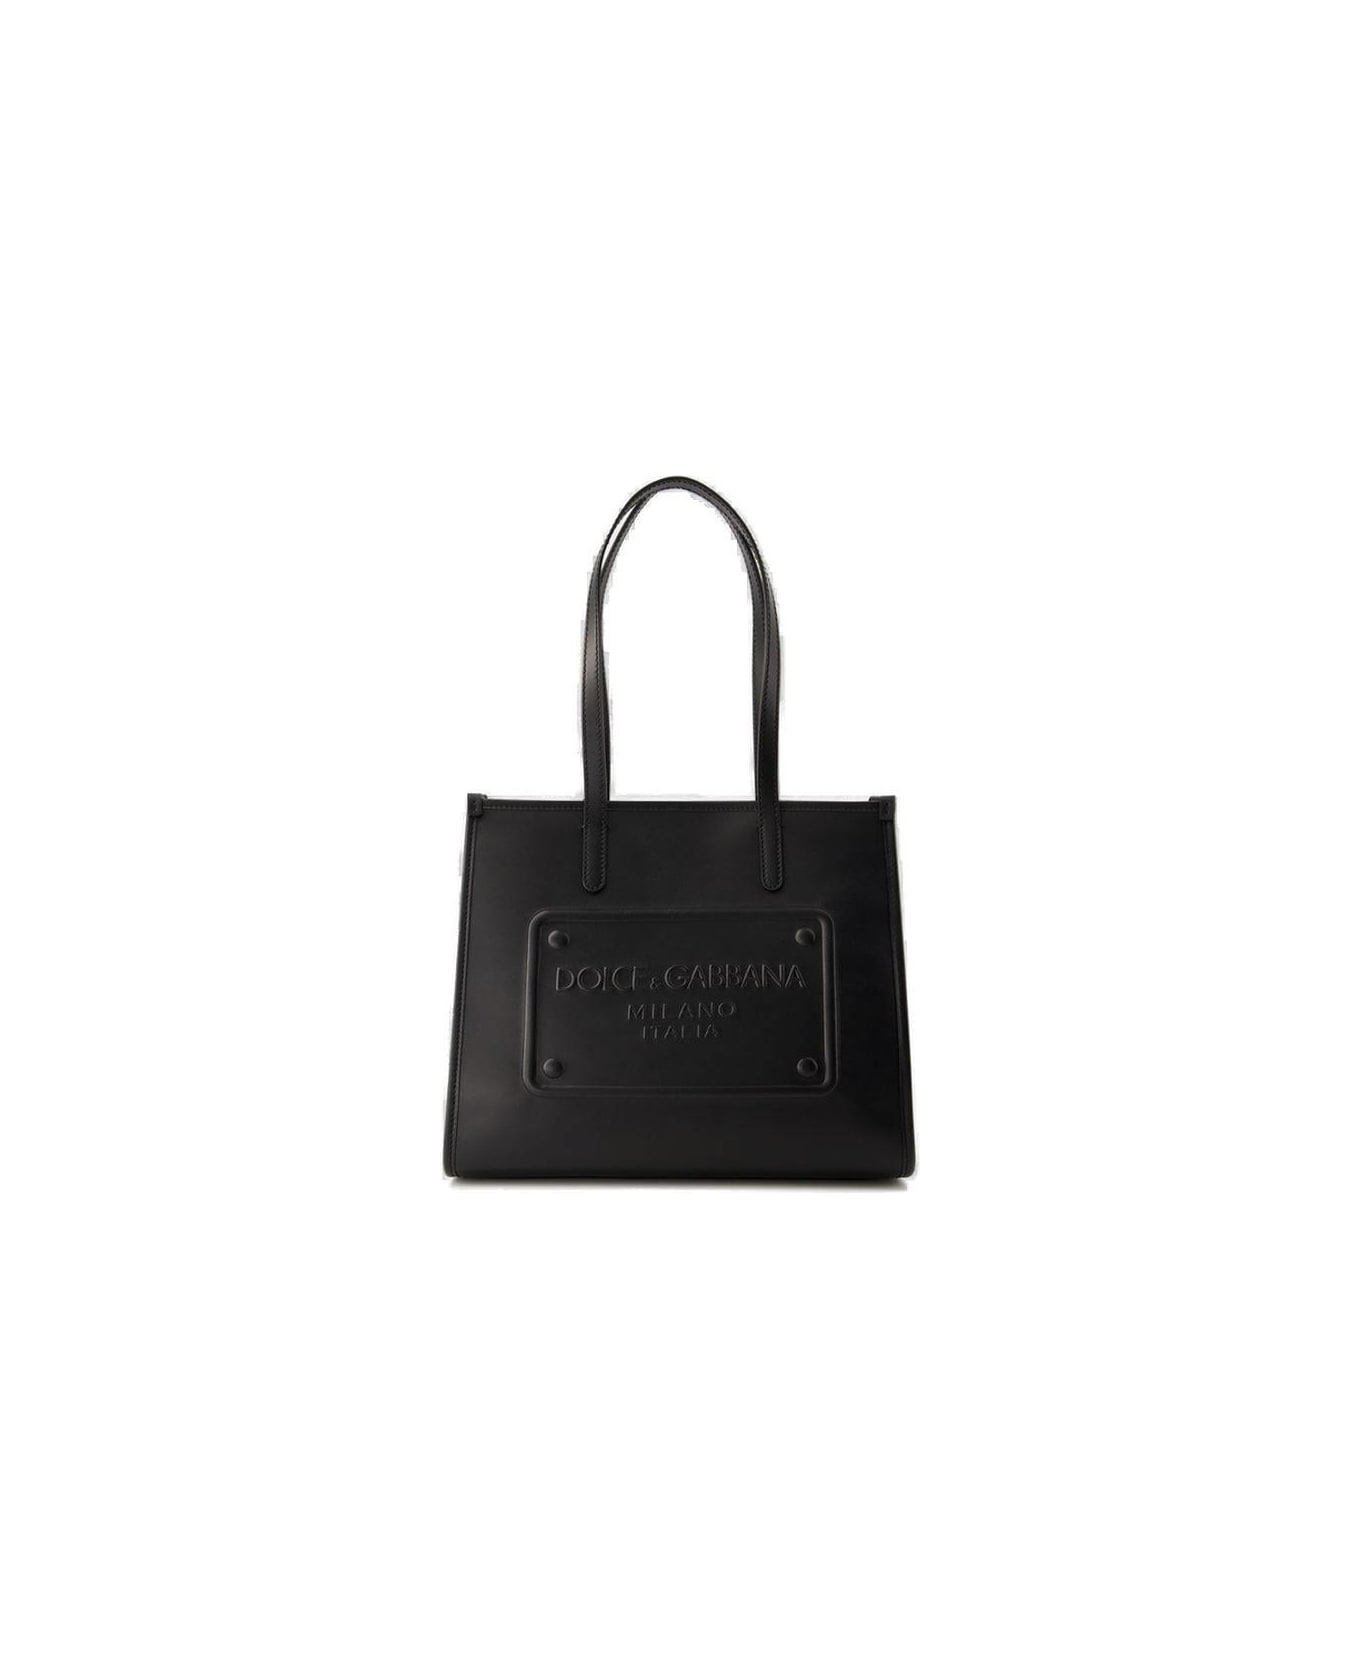 Dolce & Gabbana Shopping Bag - NERO トートバッグ